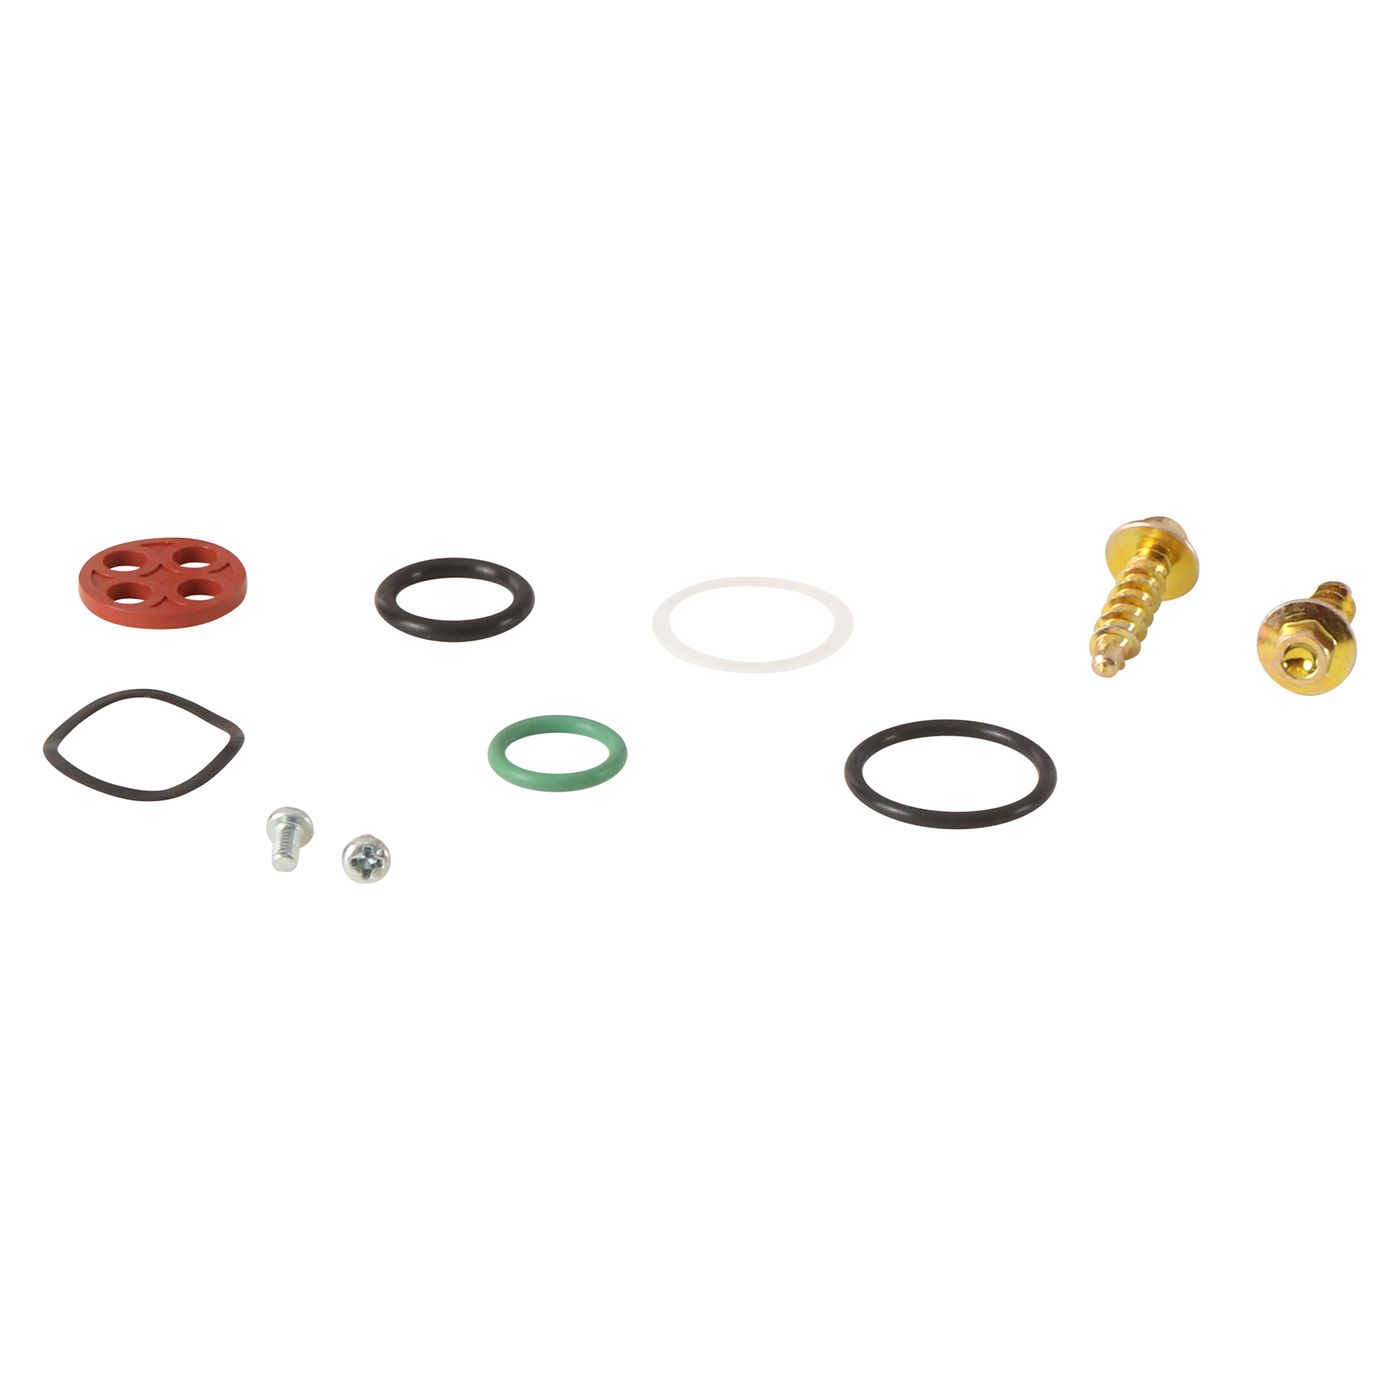 Wrp Fuel Tap Repair Kits - WRP601017 image